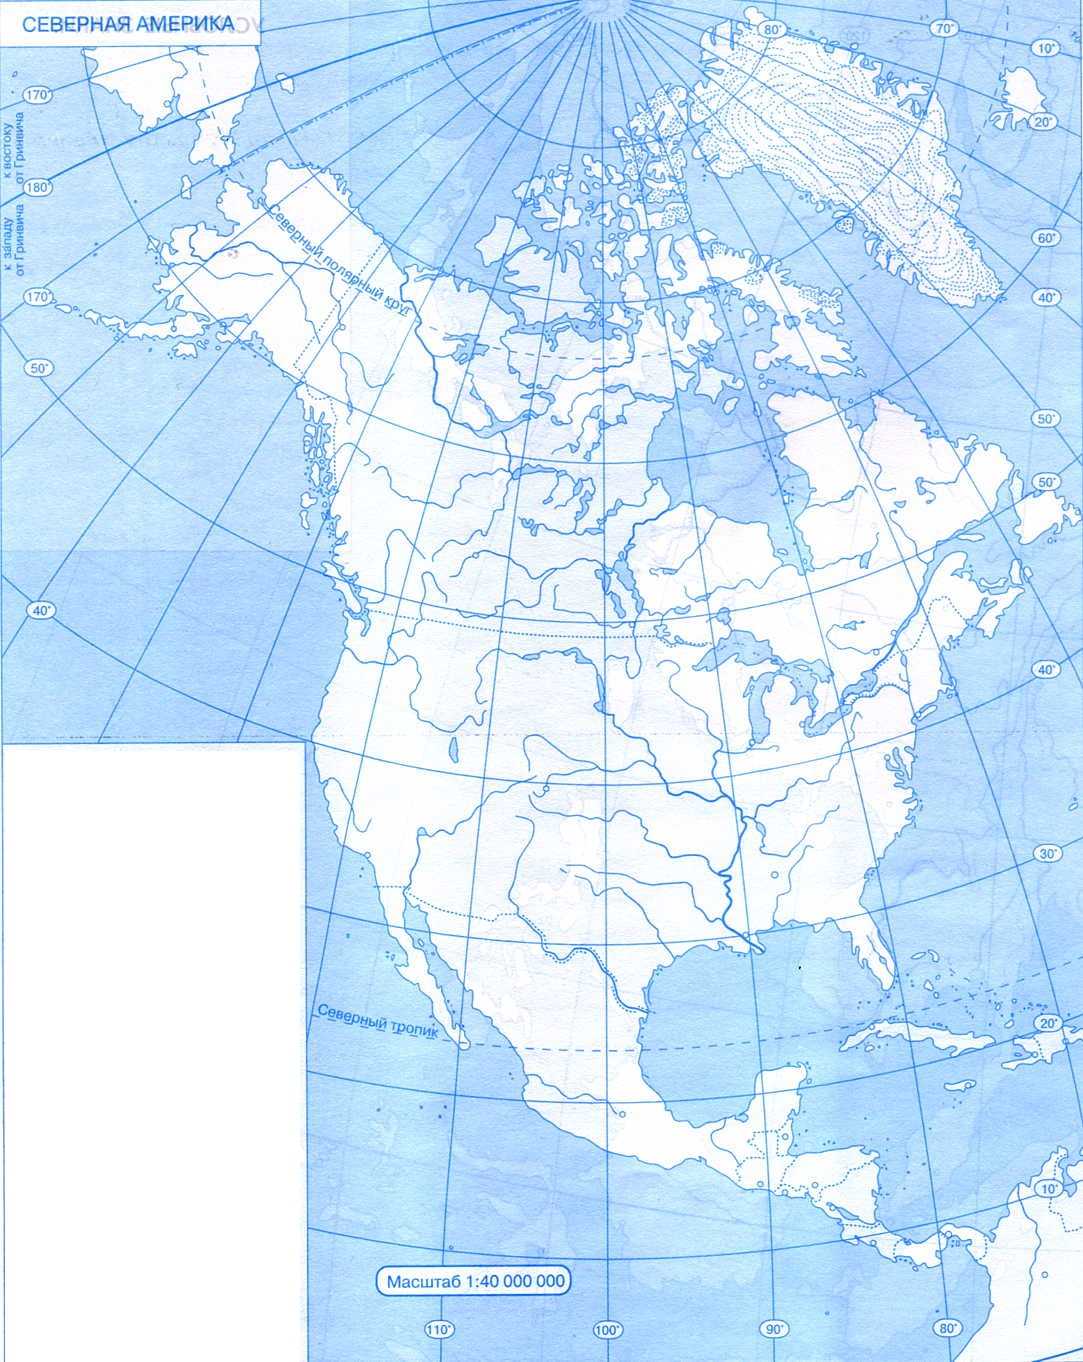 География 7 класс рабочая тетрадь северная америка. Карта Северной Америки контурная карта. Контурная ката Северной Омерики\. Контурная карта севернойтамерики. Контурная карта севеонойа мерики.